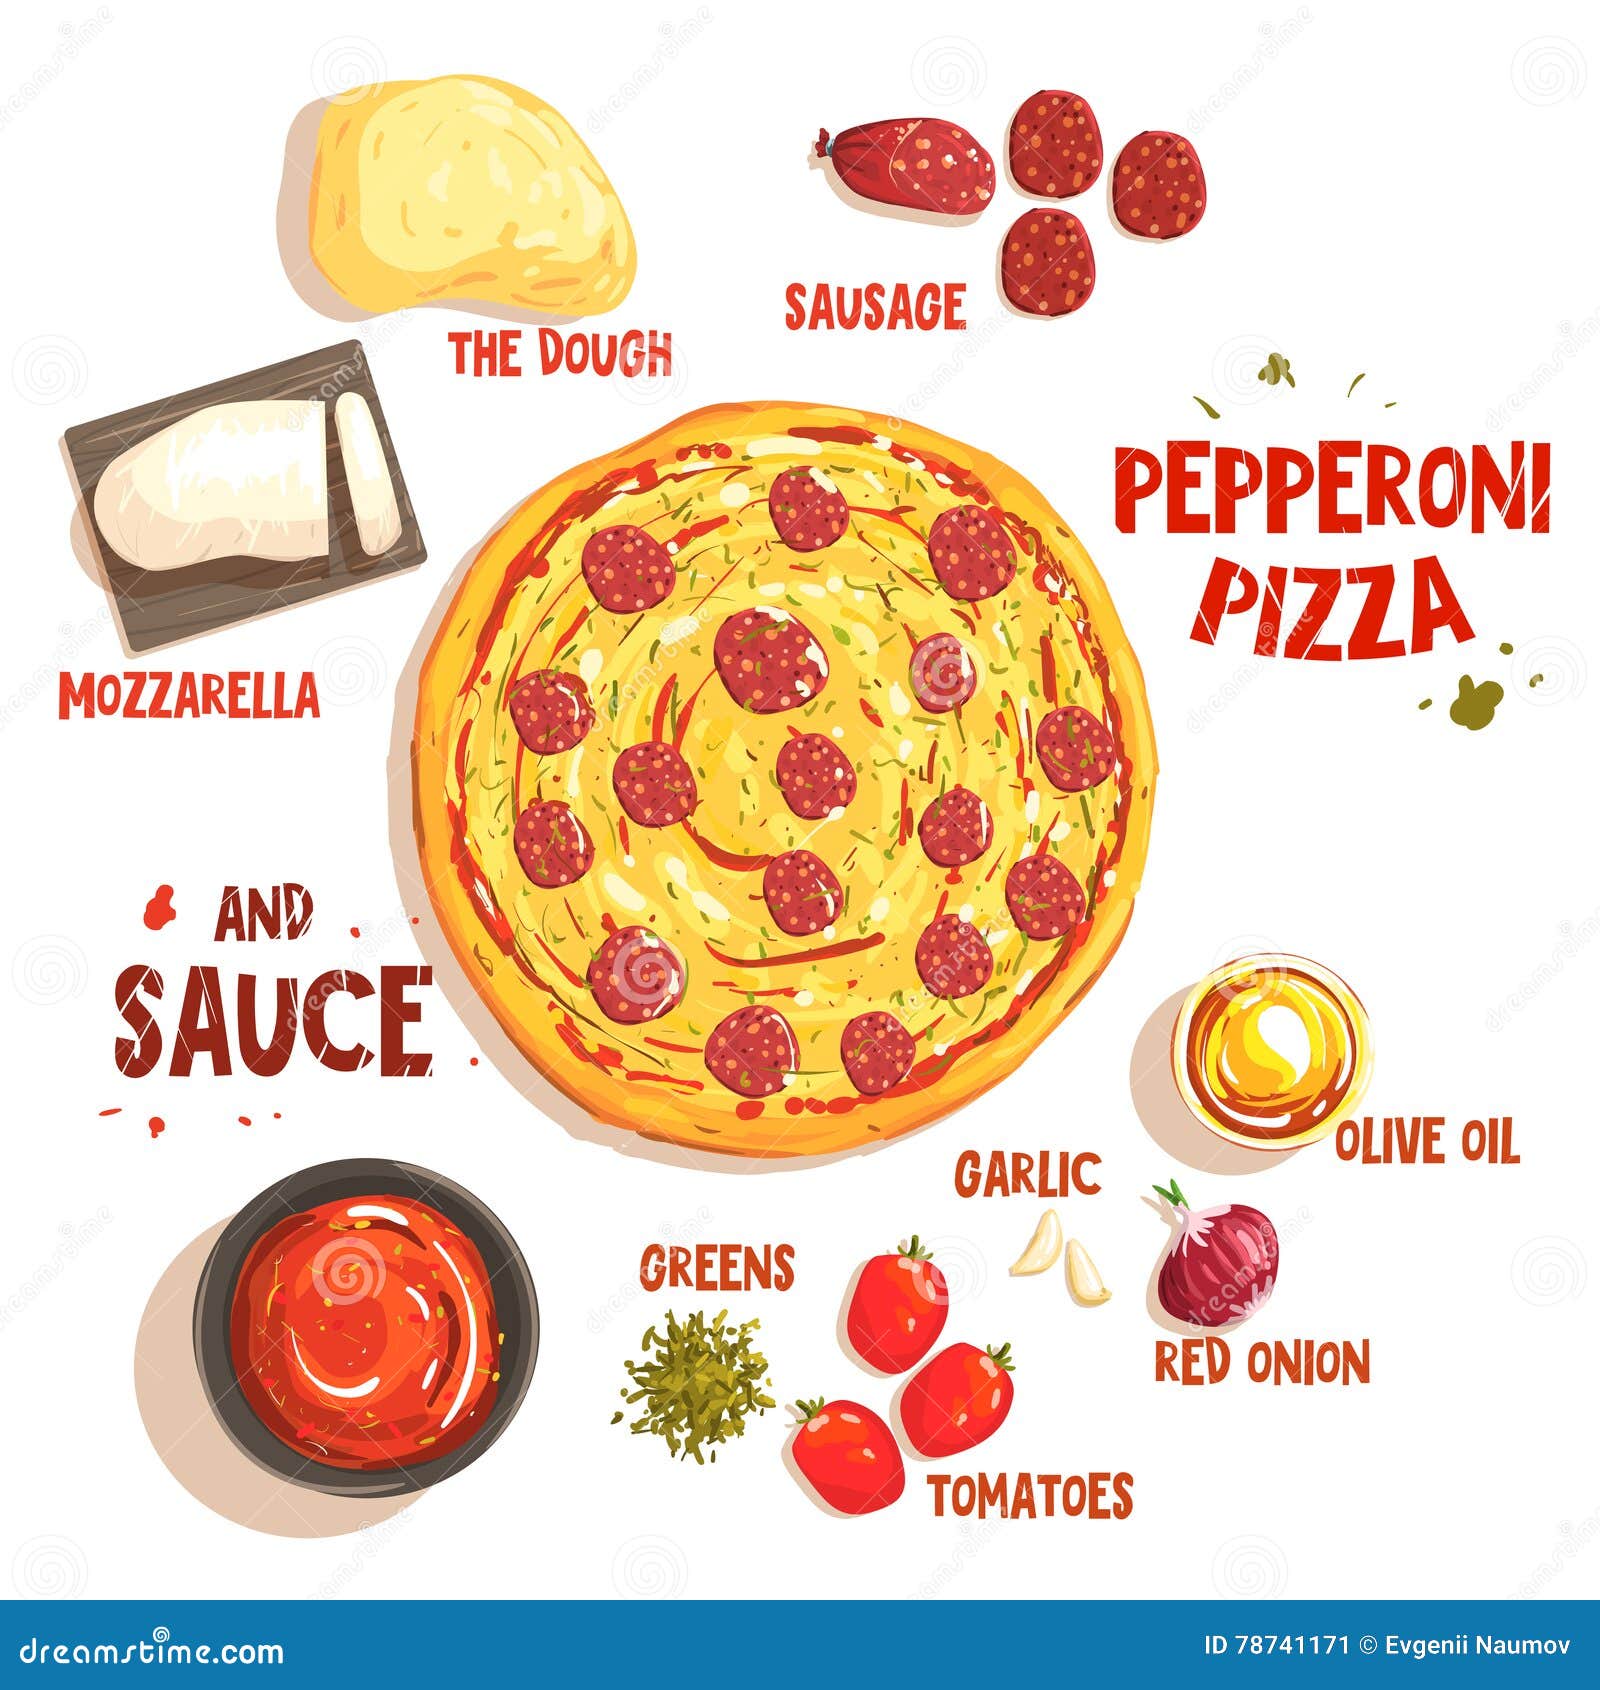 технологическая карта пицца пепперони фото 72